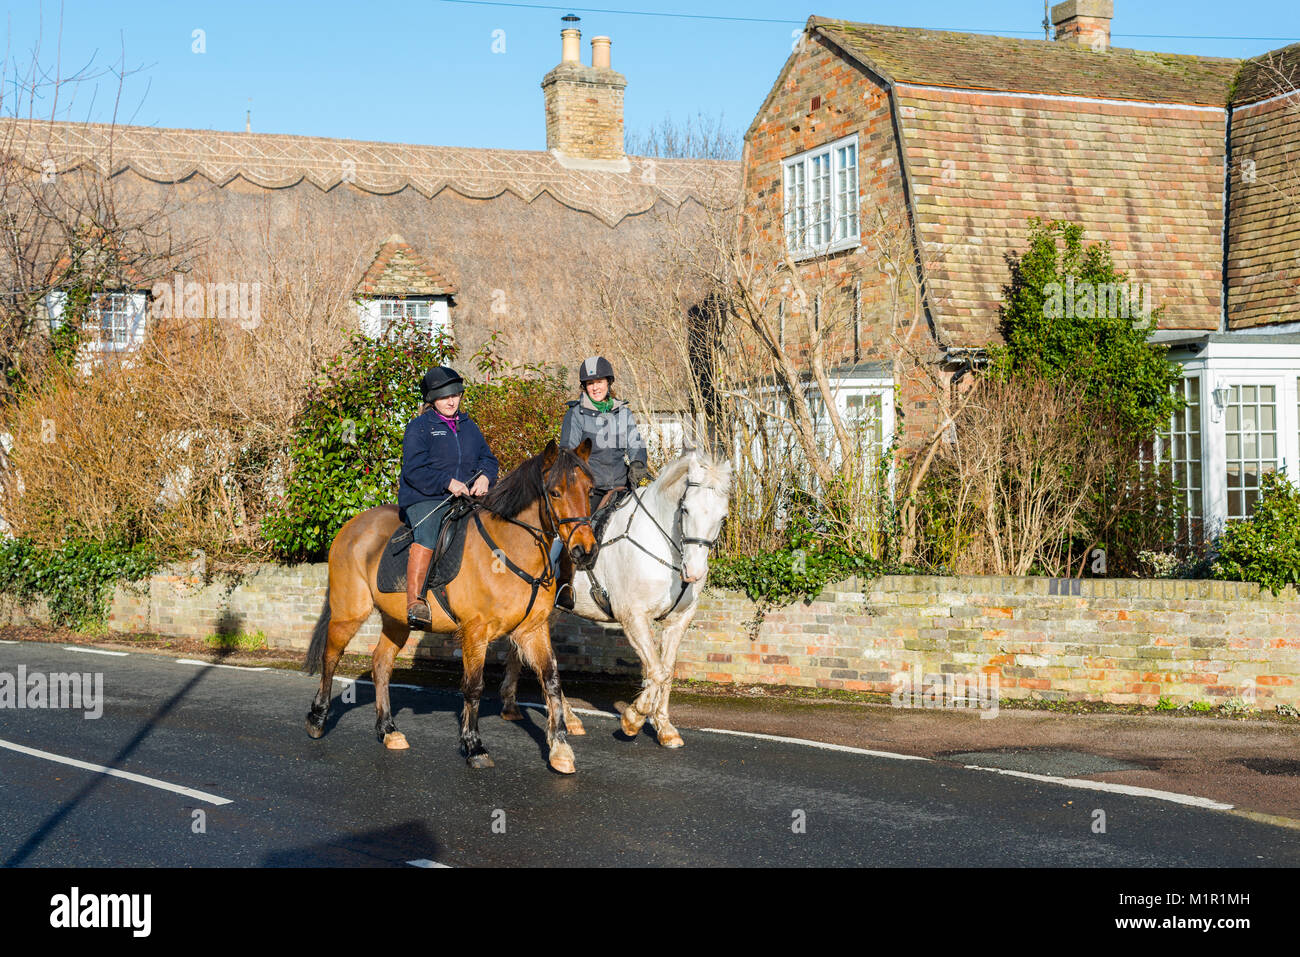 Country Life en el bonito pueblo de Hemingford abades, Cambridgeshire, Inglaterra, Reino Unido. Foto de stock